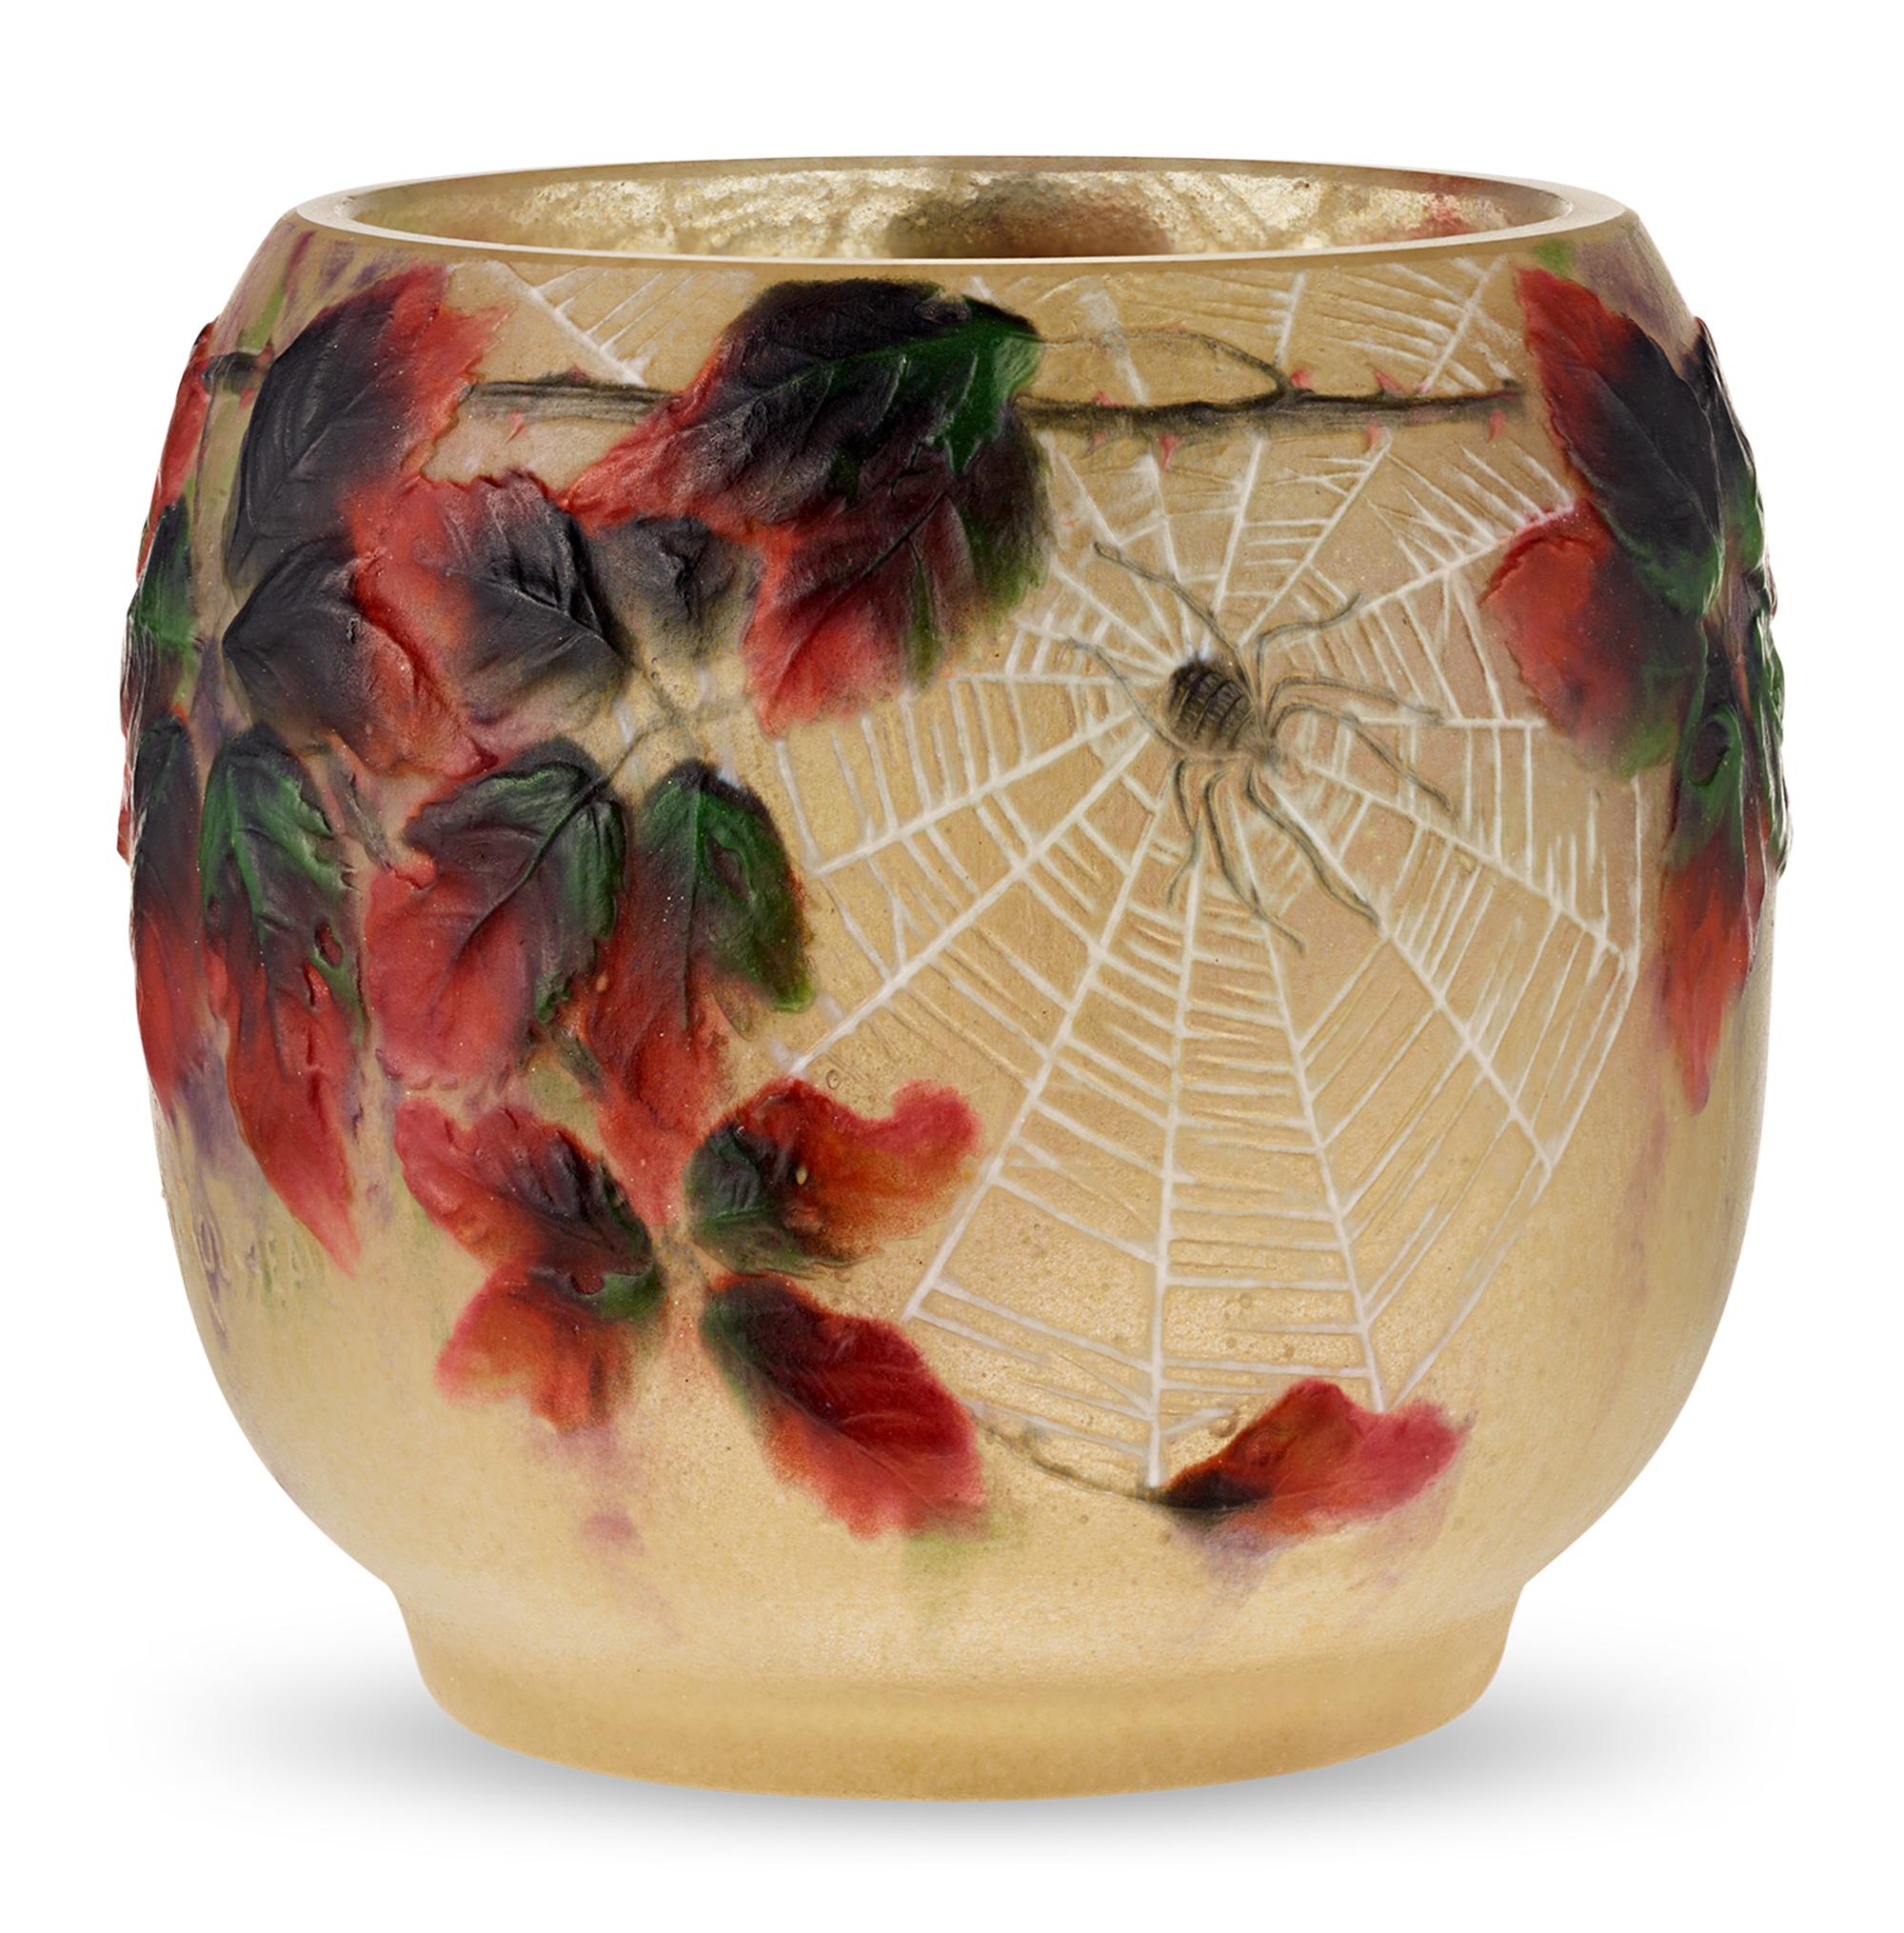 Diese äußerst seltene und skurrile Vase stammt aus der Feder von Gabriel Argy-Rousseau, einem berühmten Glasdesigner des Jugendstils und Pionier der Pâte de Verre-Technik. Die Vase mit den geformten Reliefs von Spinnen, die inmitten von roten und